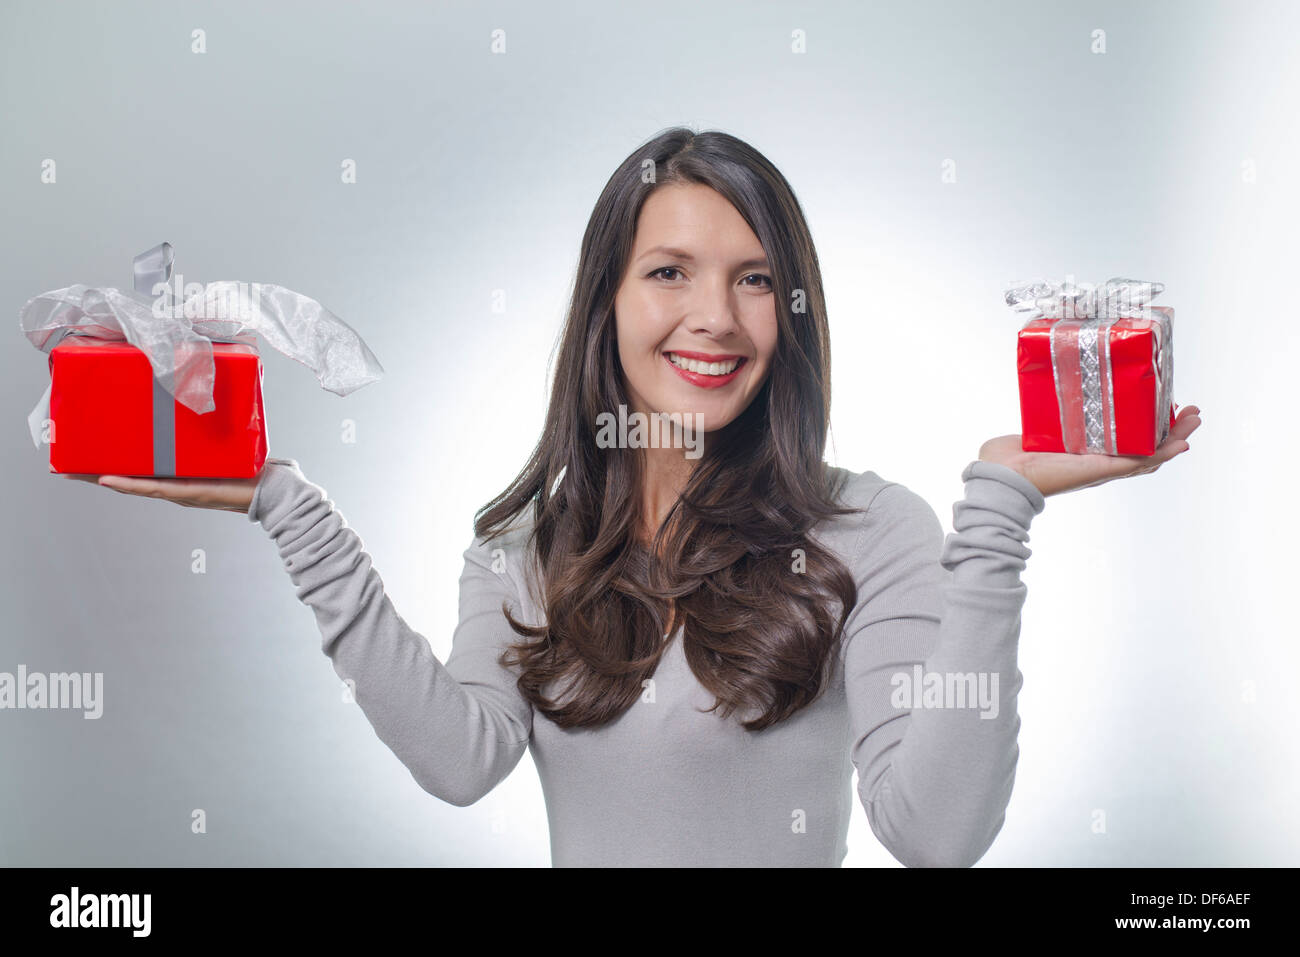 Hübsche junge Frau mit lange brünette Haare und einen schönen sanften Lächeln durchhalten bunte rote Geschenke für einen lieben Menschen Stockfoto